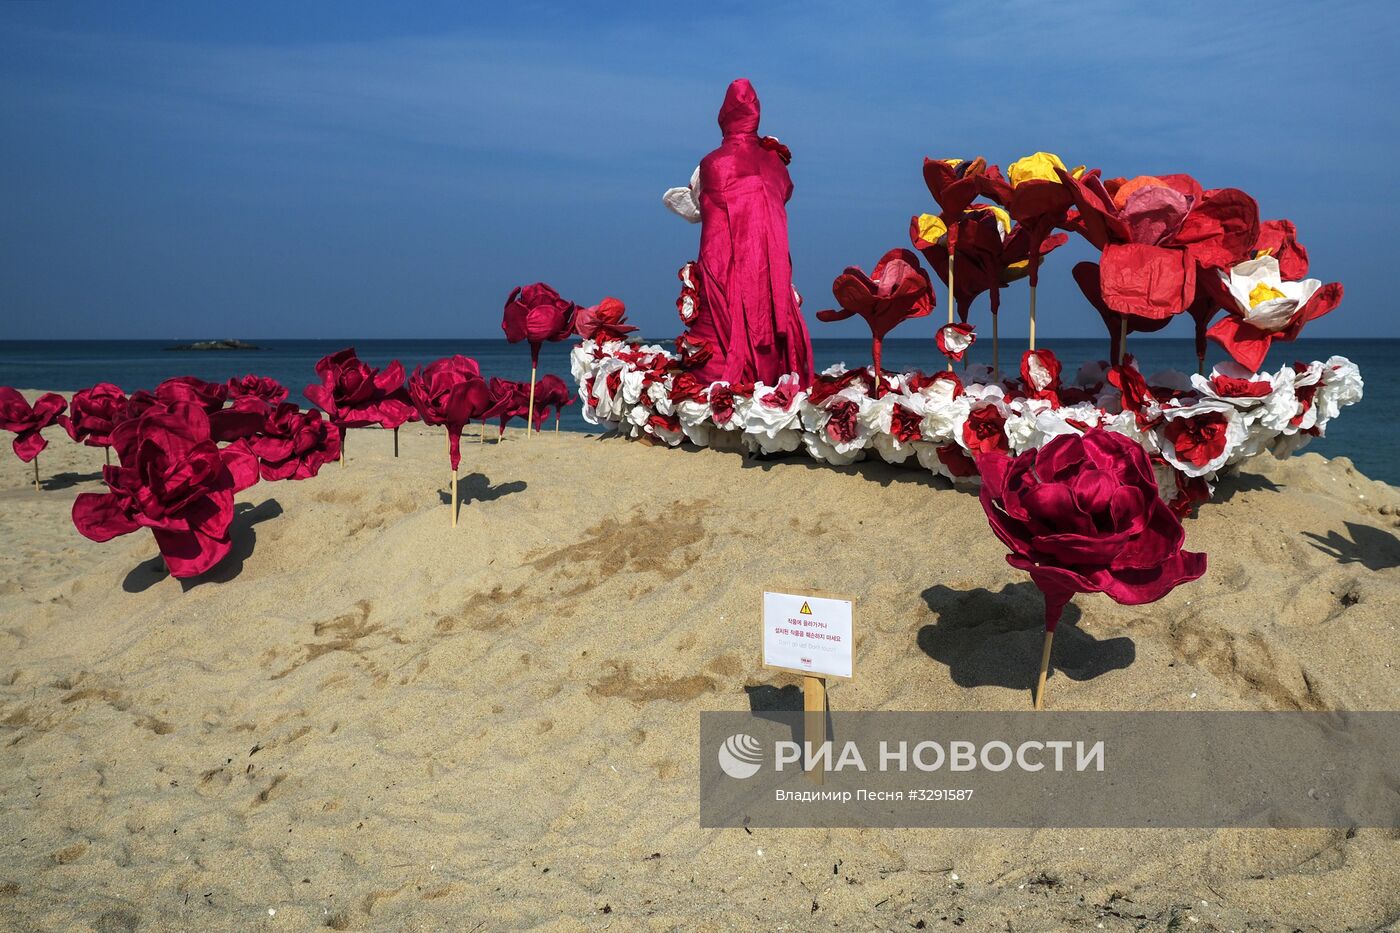 Арт-фестиваль FireArtFesta на пляже Кёнпо в Канныне